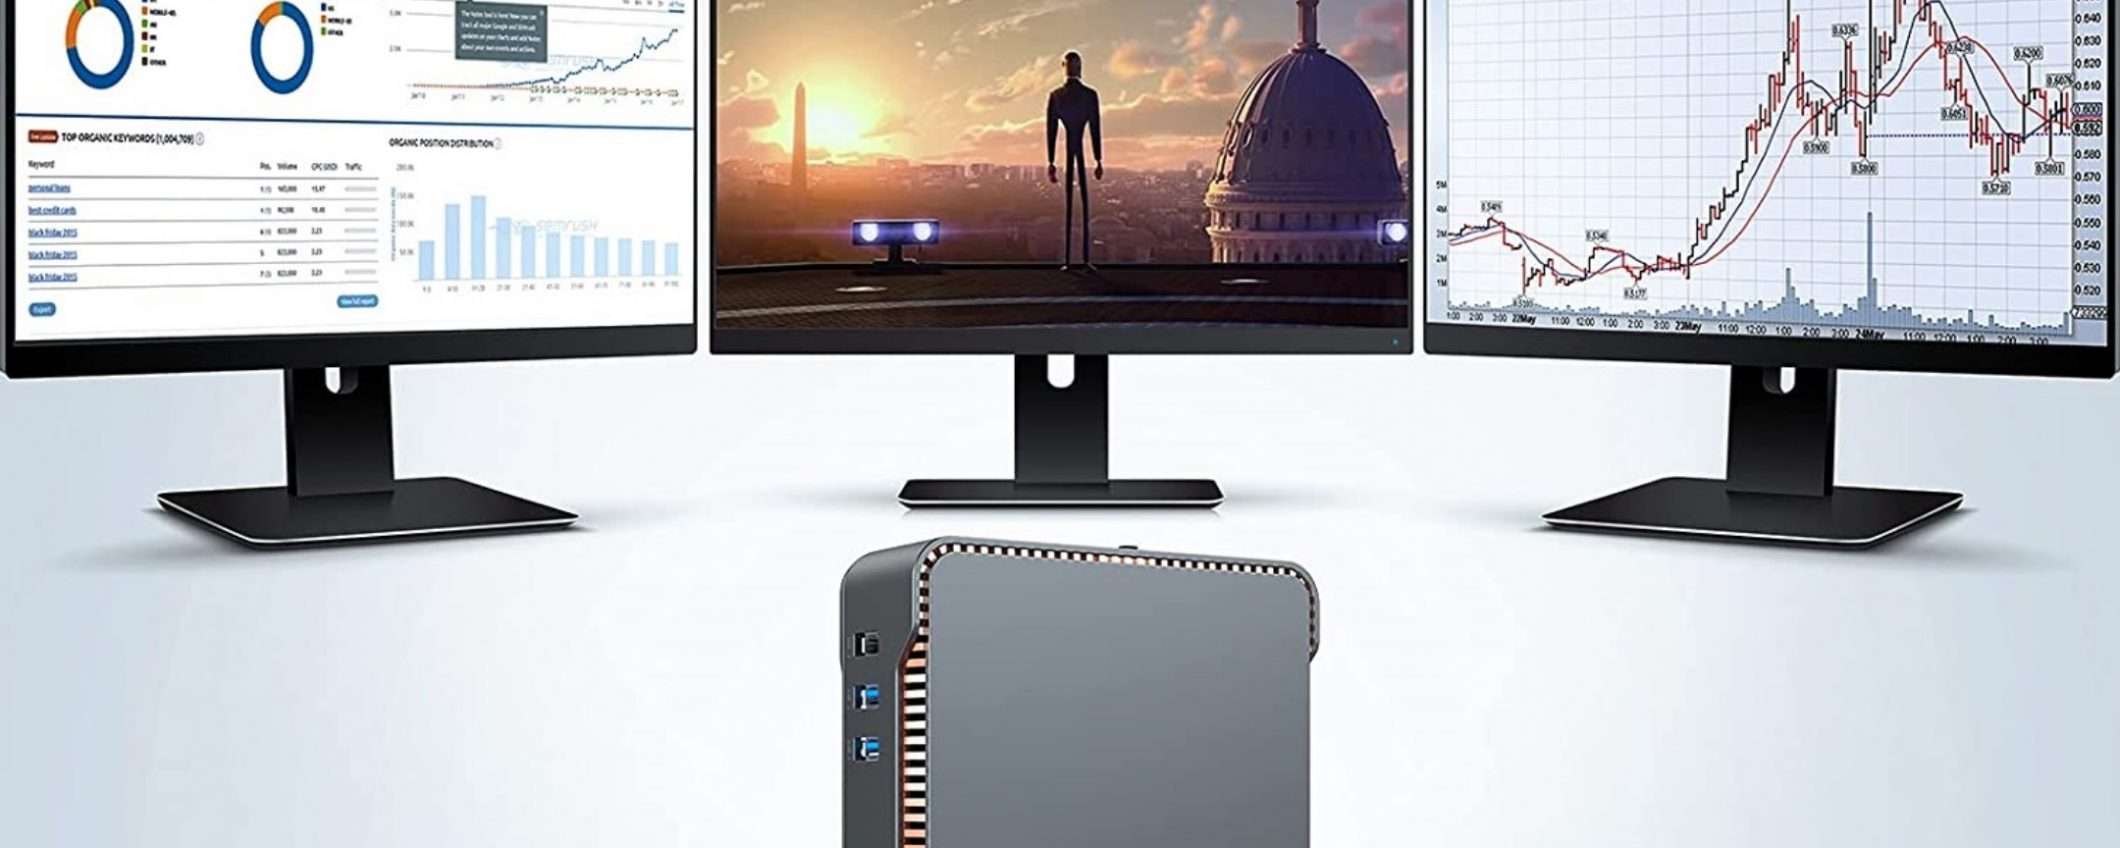 Triplo monitor ad un prezzo incredibile con questo Mini PC di Suncall